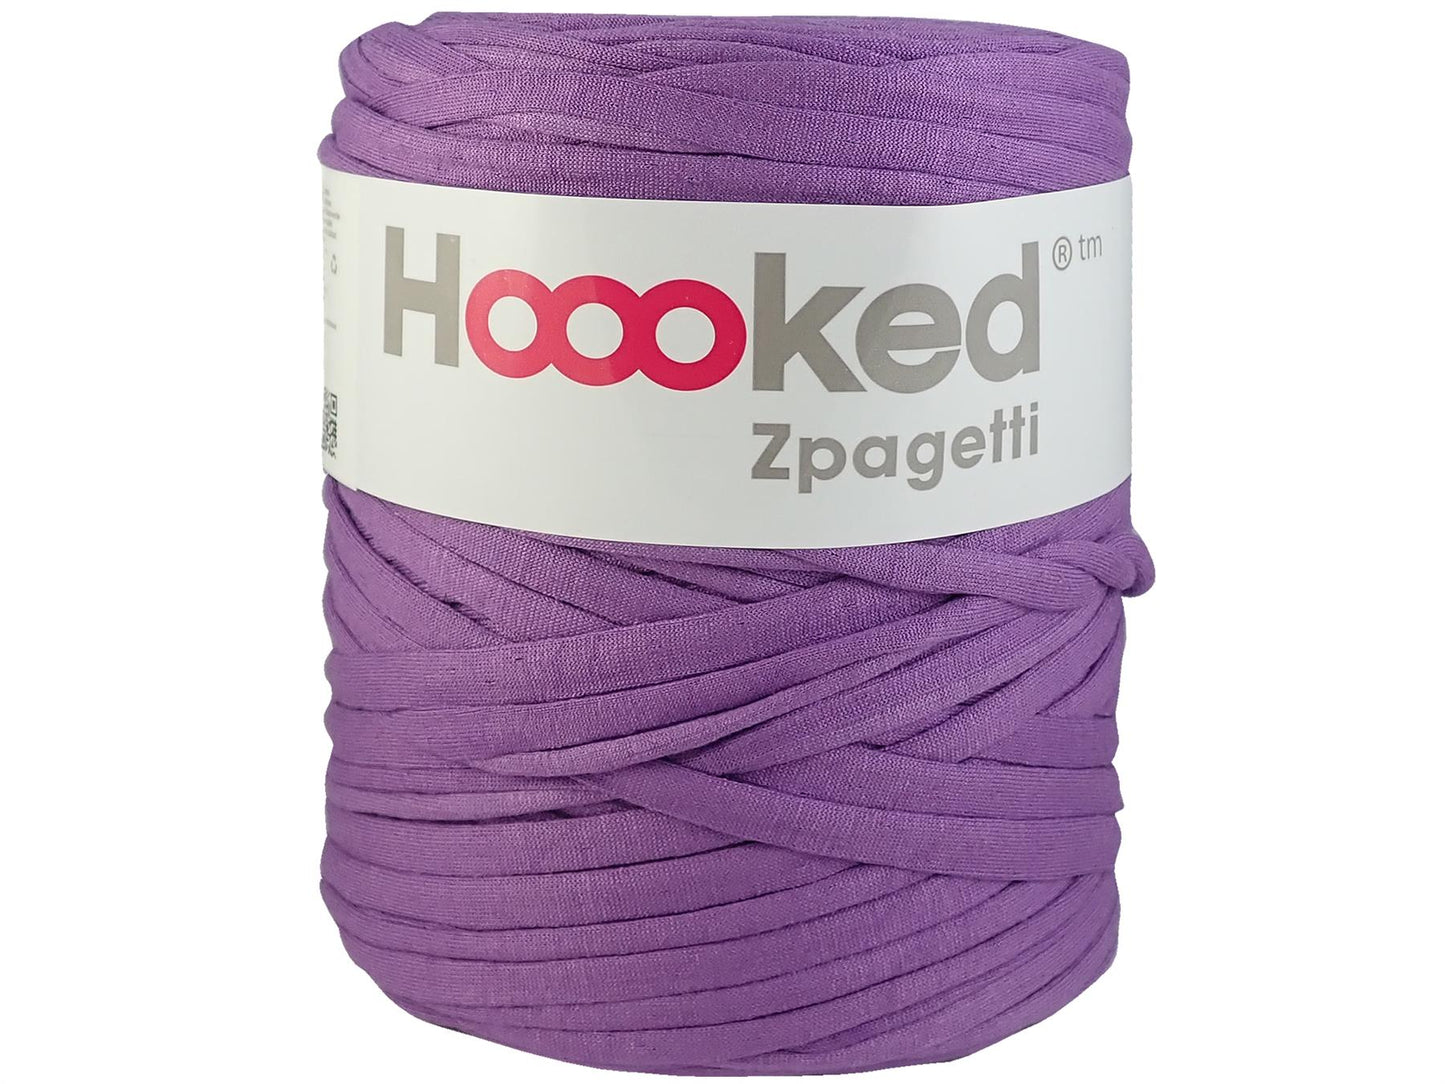 Hoooked Zpagetti Mauve Cotton T-Shirt Yarn - 120M 700g